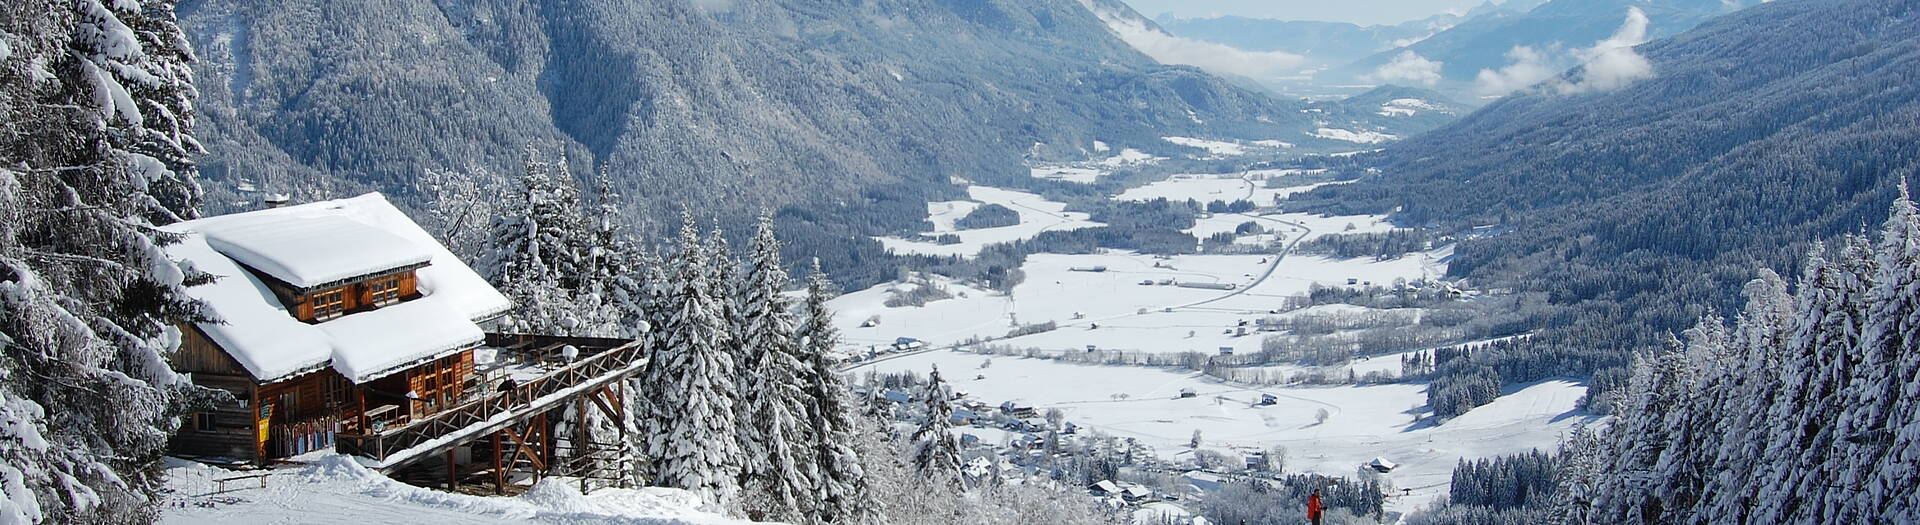 Familienskigebiet Weissbriach Ski for free